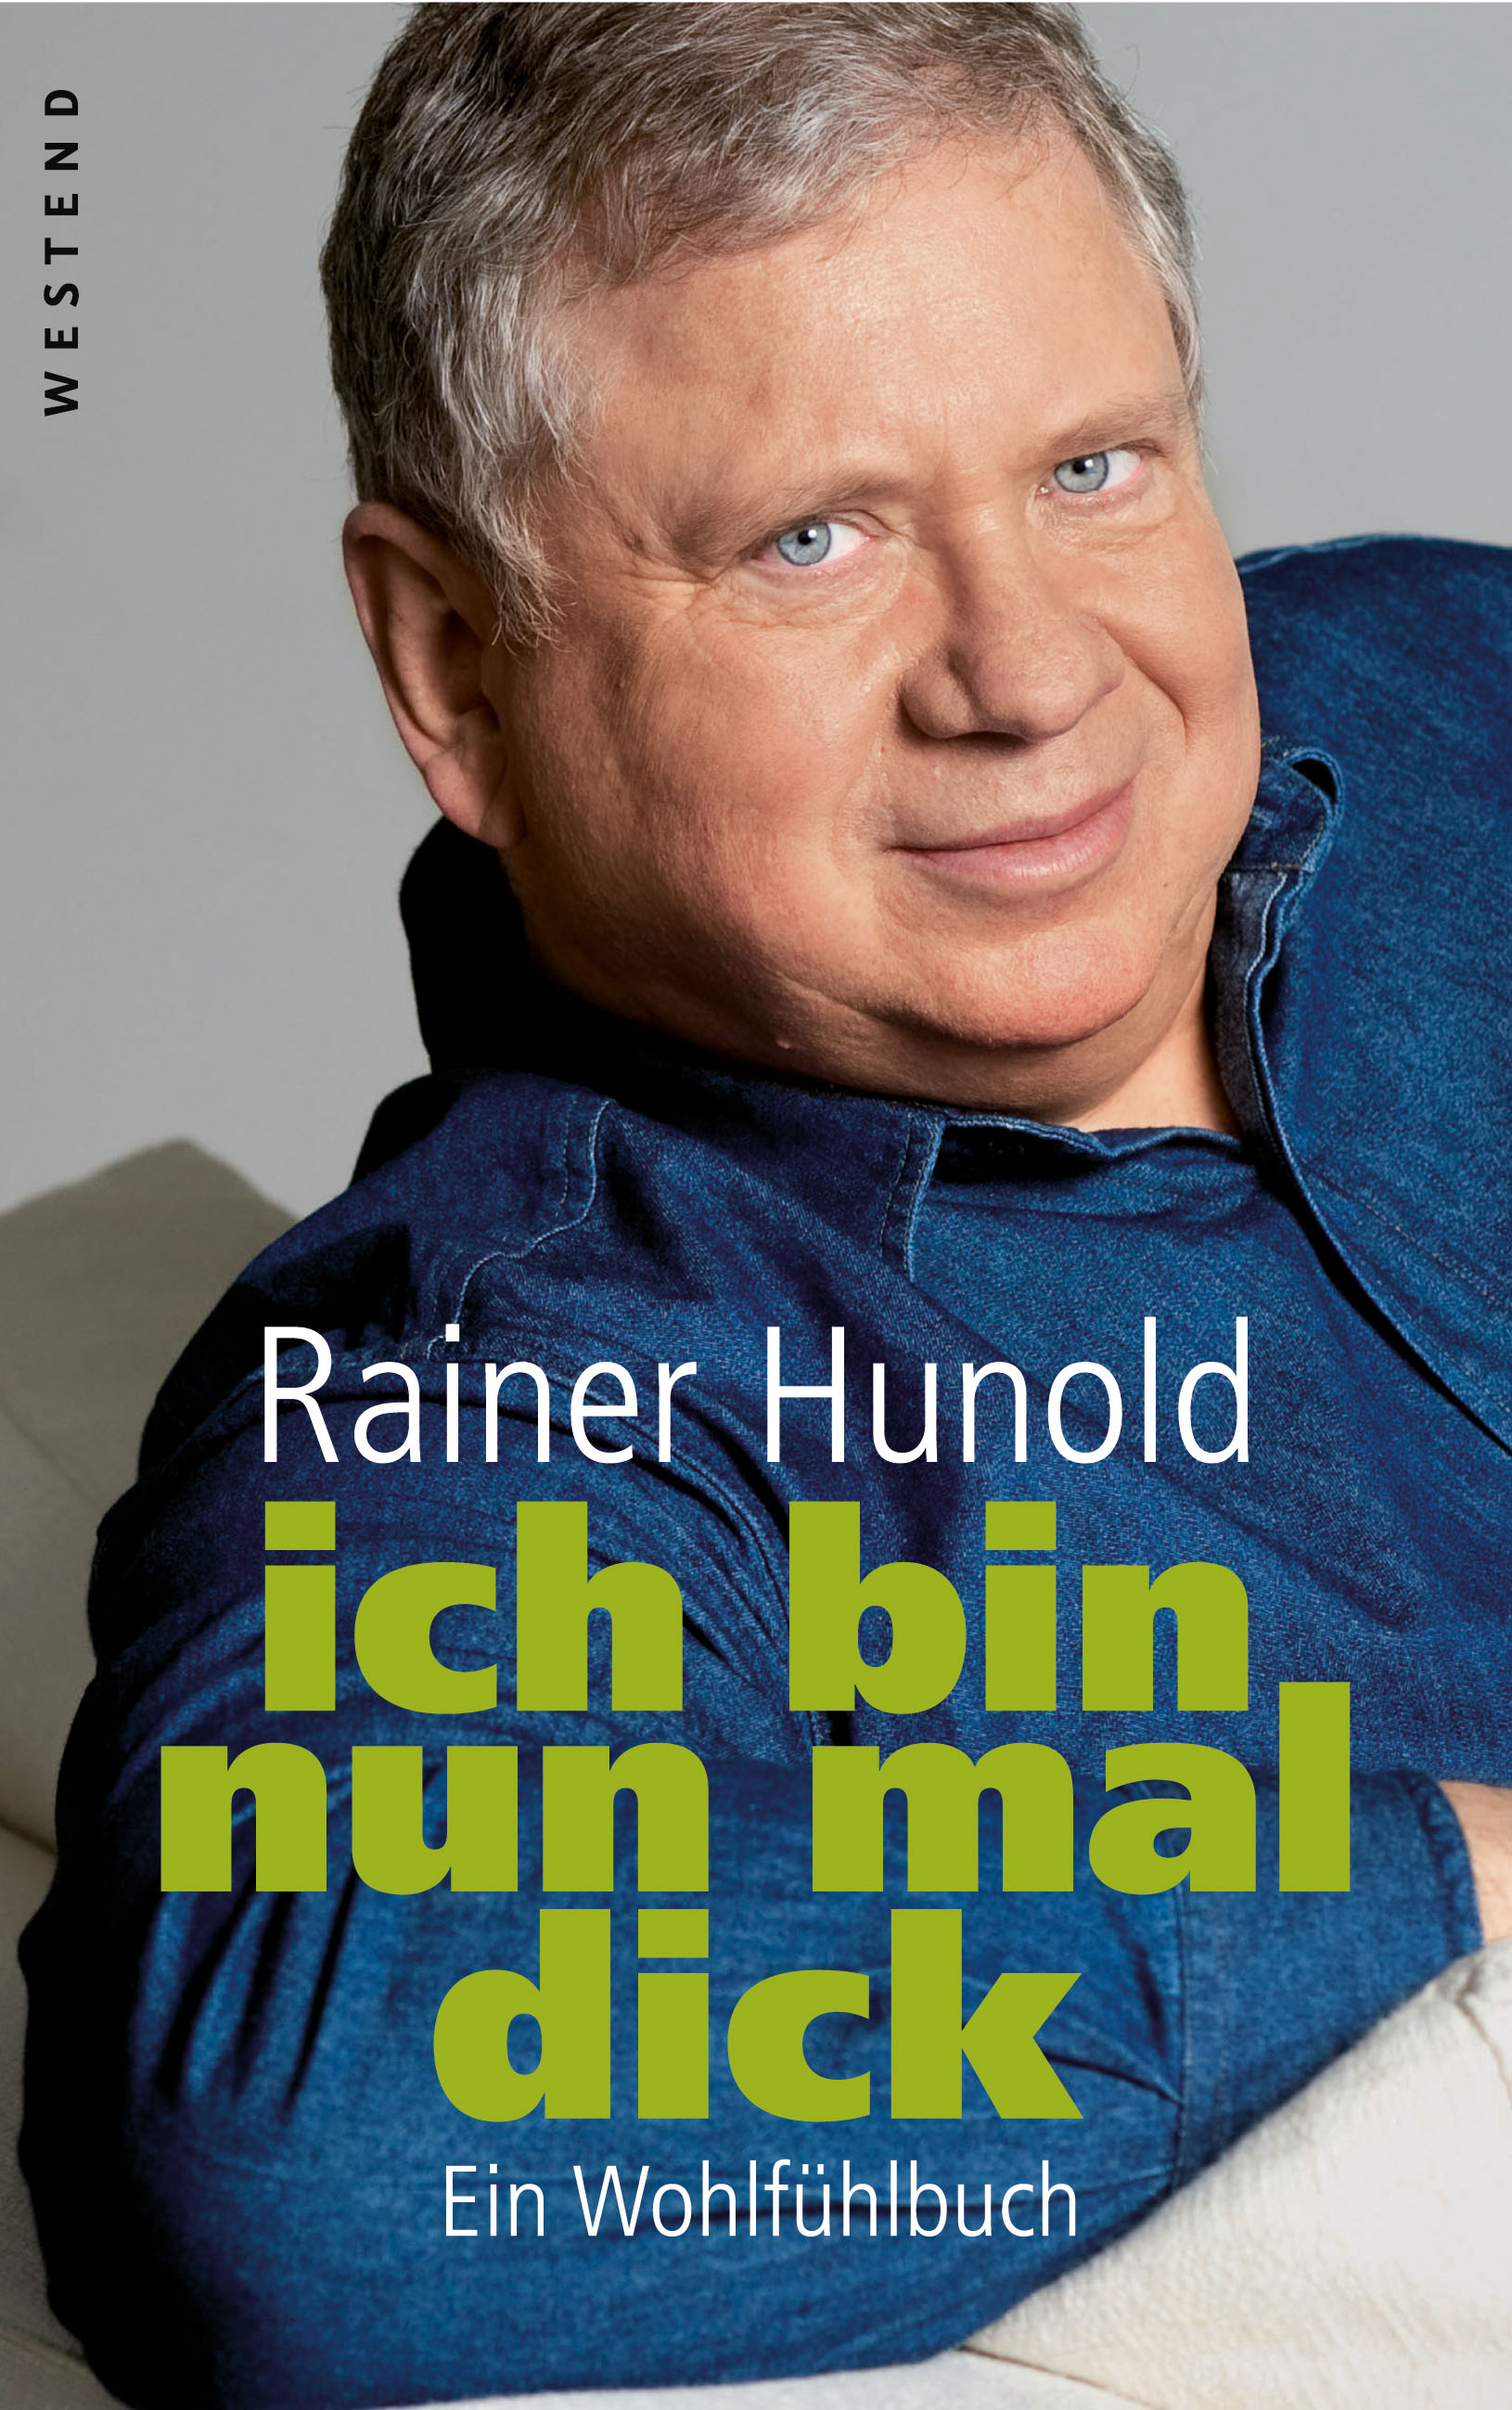 Rainer Hunold